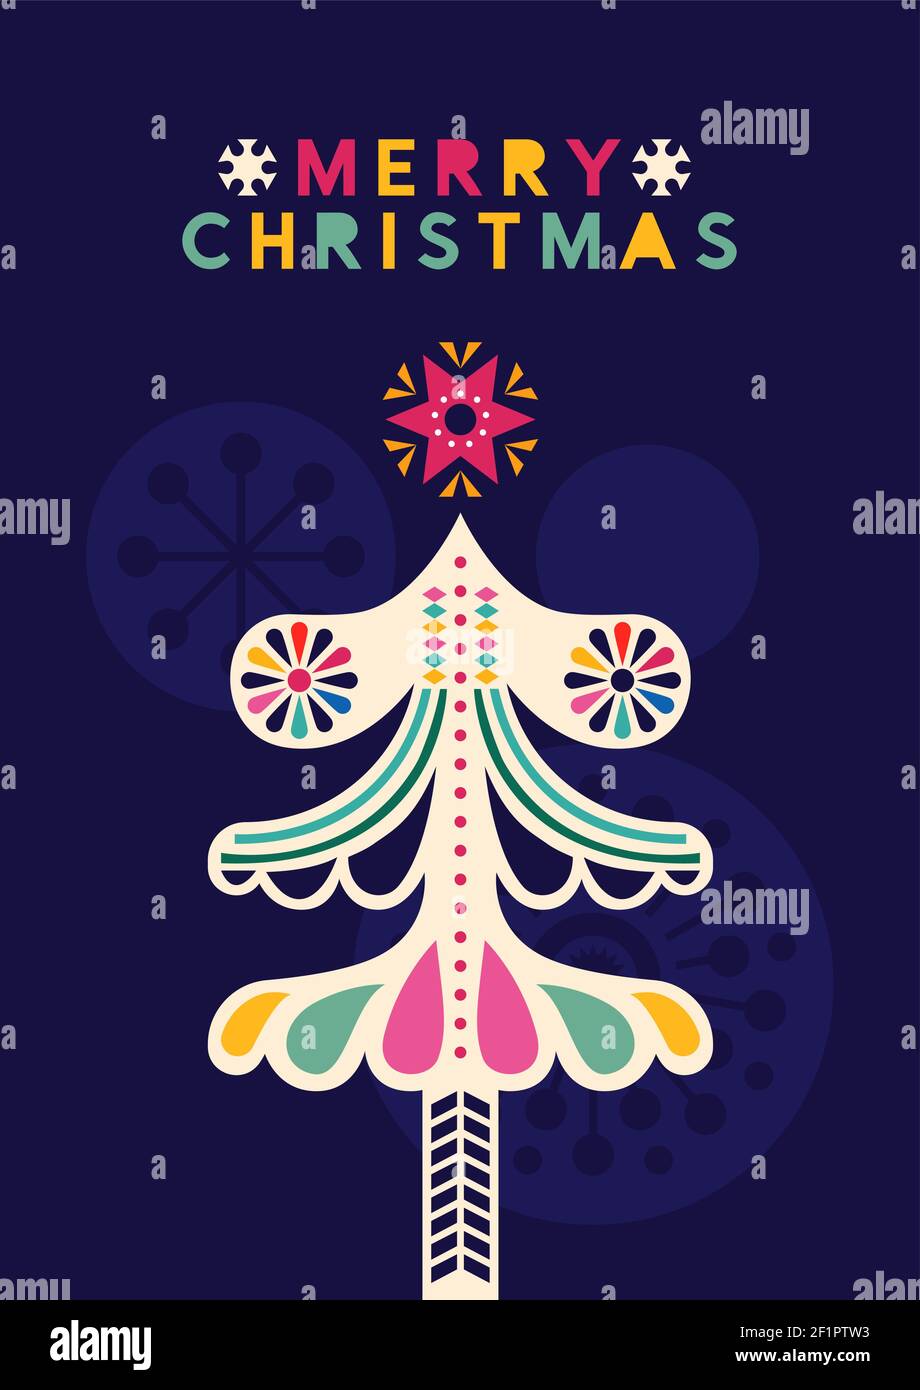 Frohe Weihnachten Grußkarte Illustration von bunten Winter Kiefer mit Stern Ornamente in modernen Volkskunst-Stil. Abstrakte skandinavische Geometrie Stock Vektor